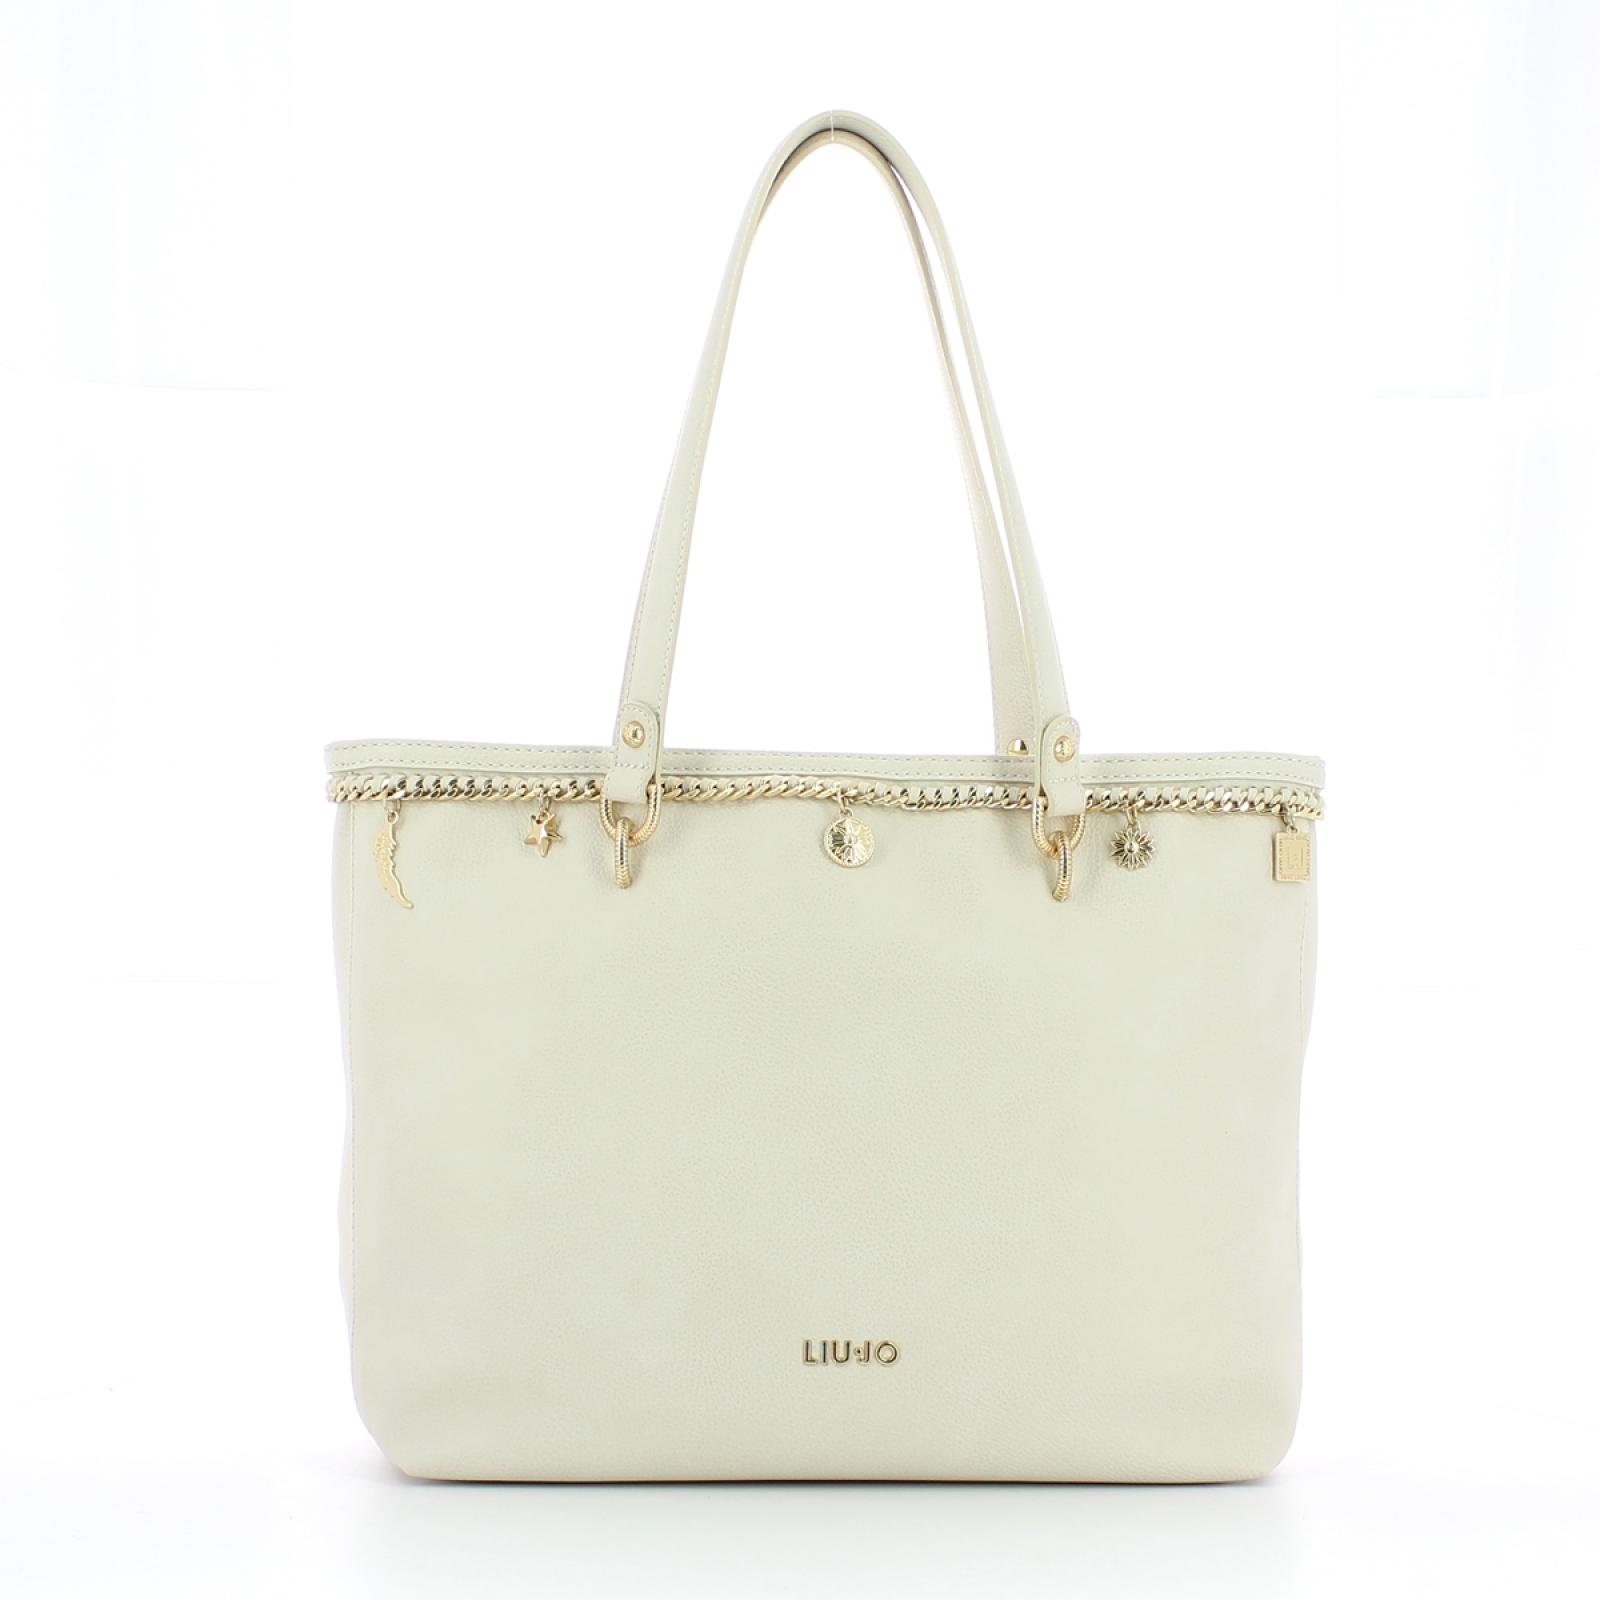 Liu Jo Shopping Bag - 1